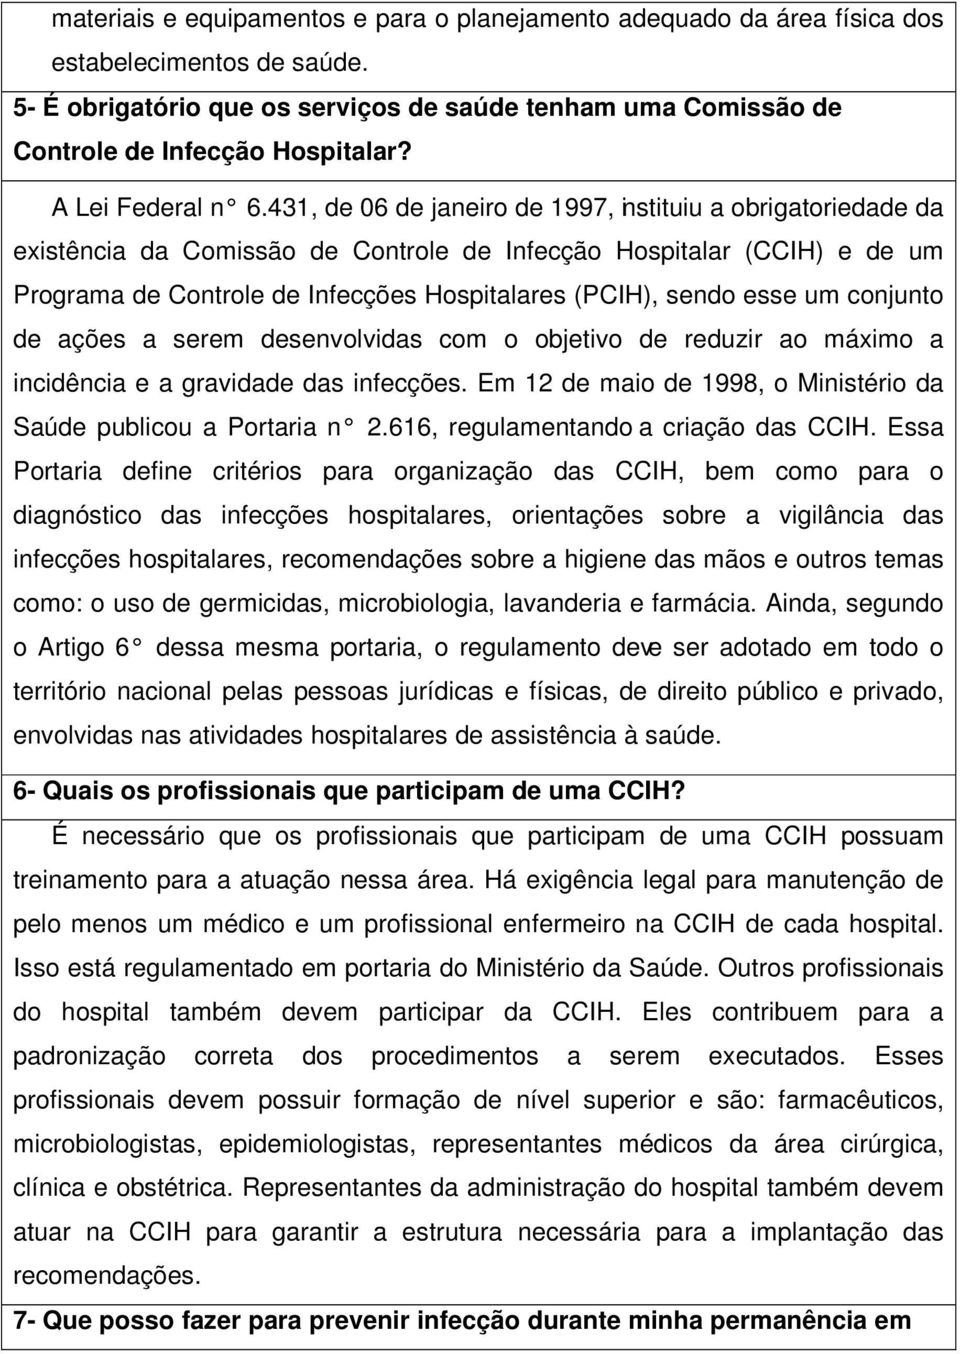 431, de 06 de janeiro de 1997, instituiu a obrigatoriedade da existência da Comissão de Controle de Infecção Hospitalar (CCIH) e de um Programa de Controle de Infecções Hospitalares (PCIH), sendo